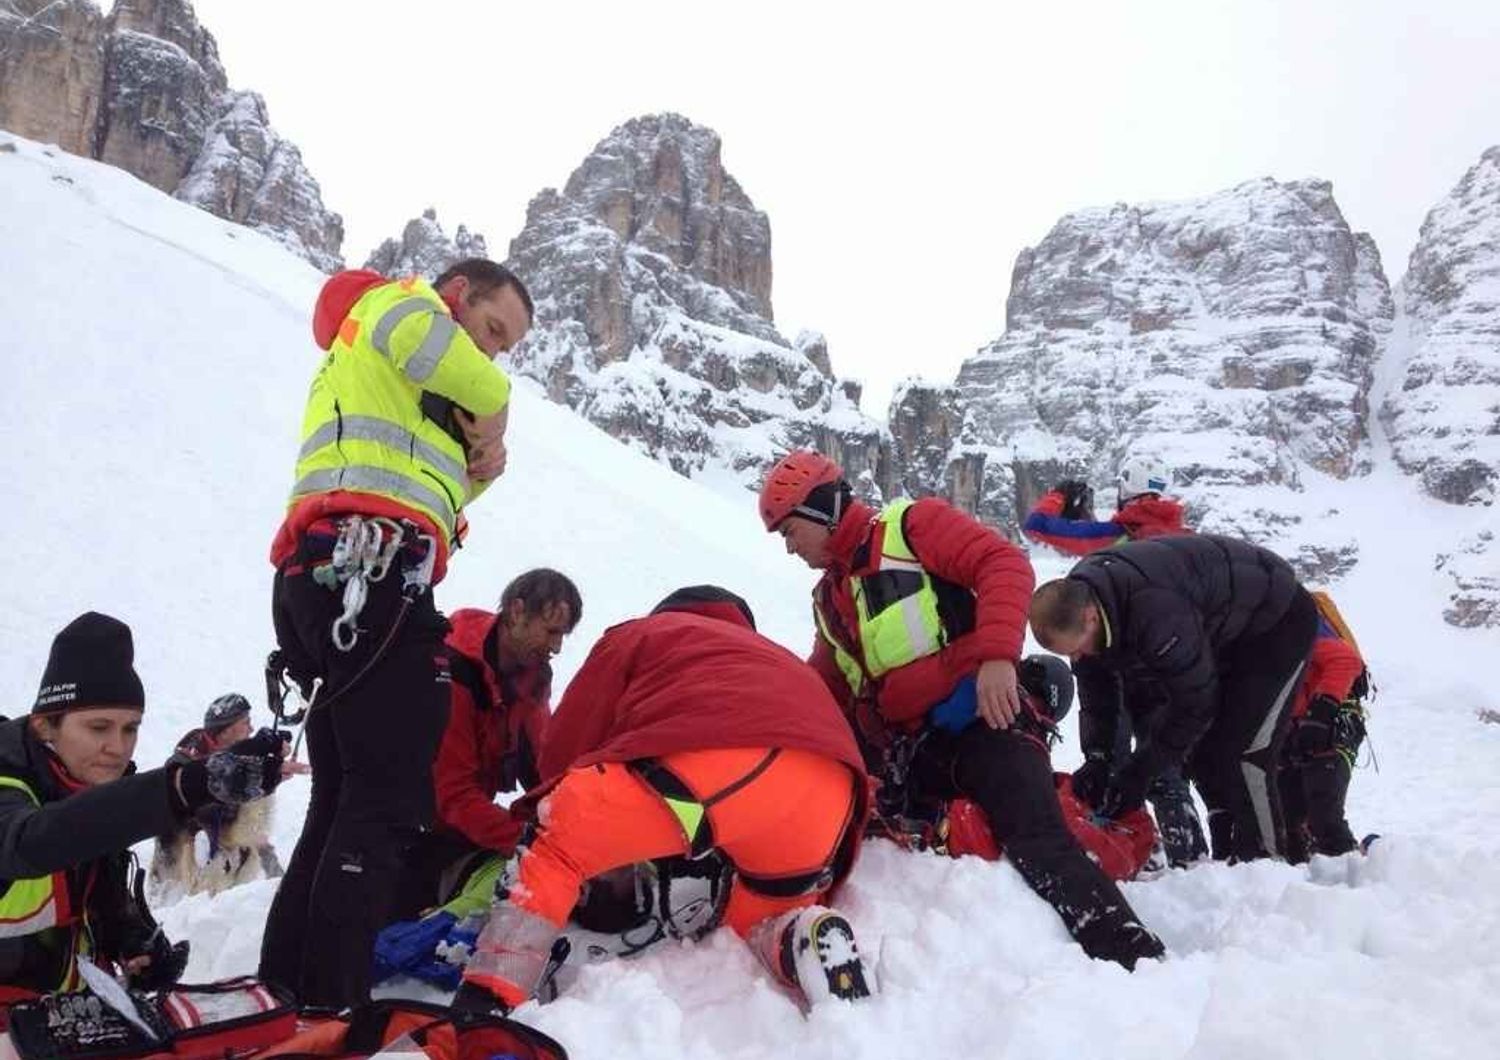 Slavina travolge quattro scialpinisti sul Cristallo. Un morto e due feriti